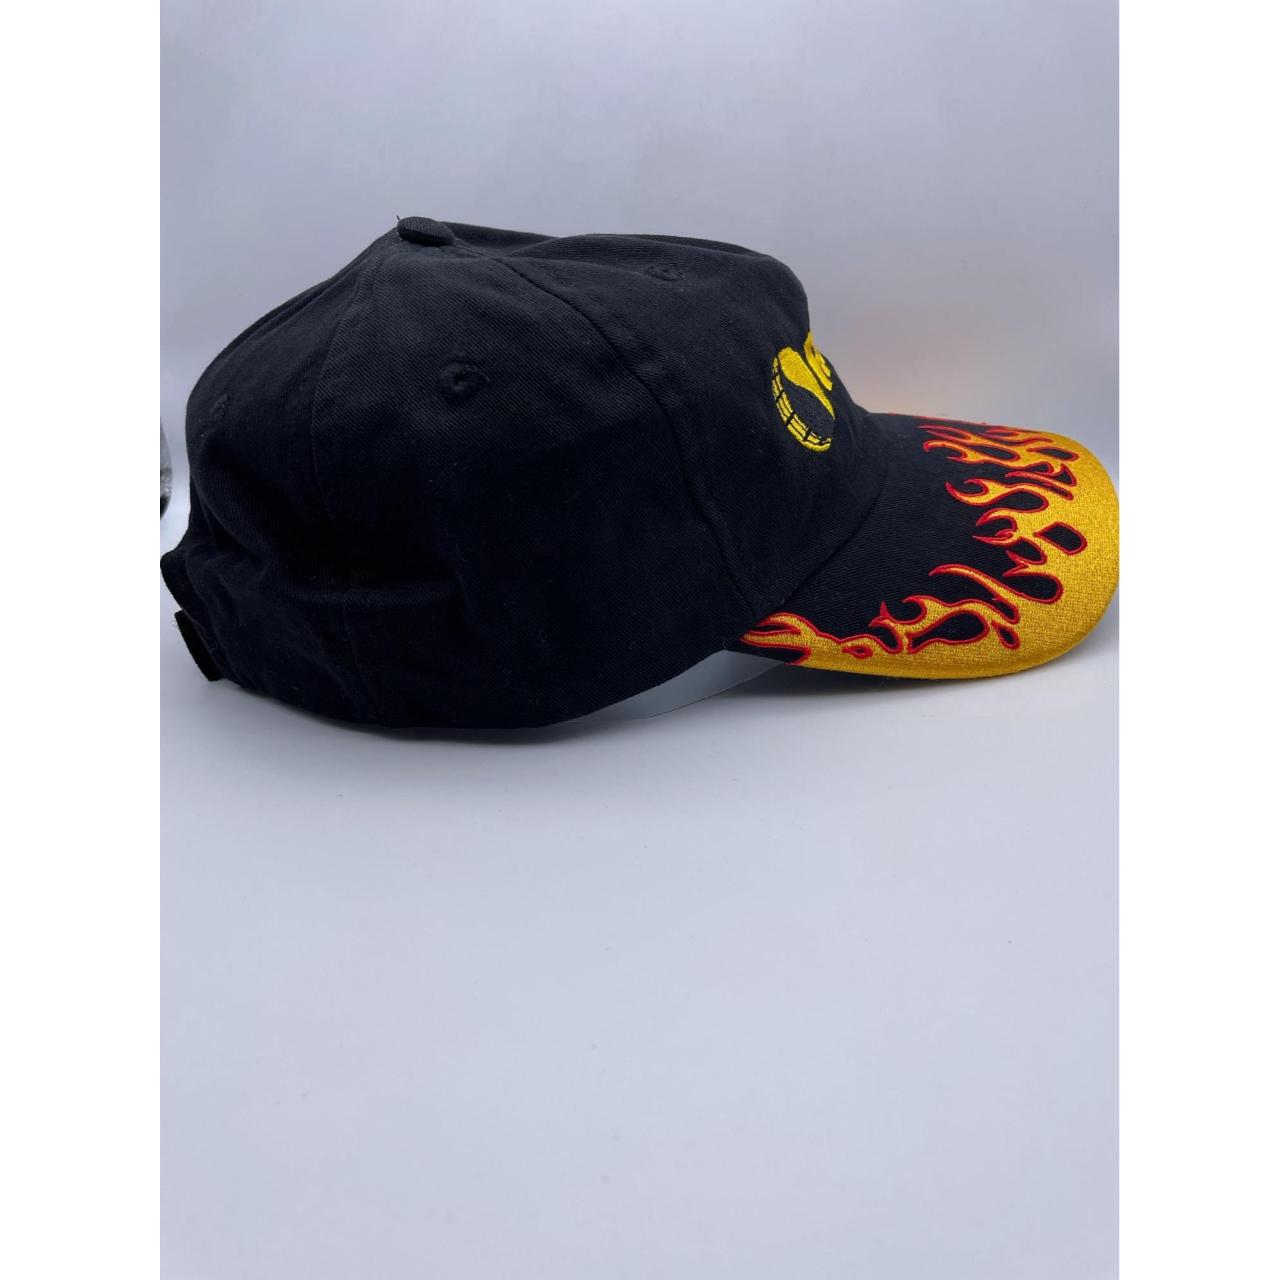 Reinke Flame SnapBack Hat In Good Used... - Depop